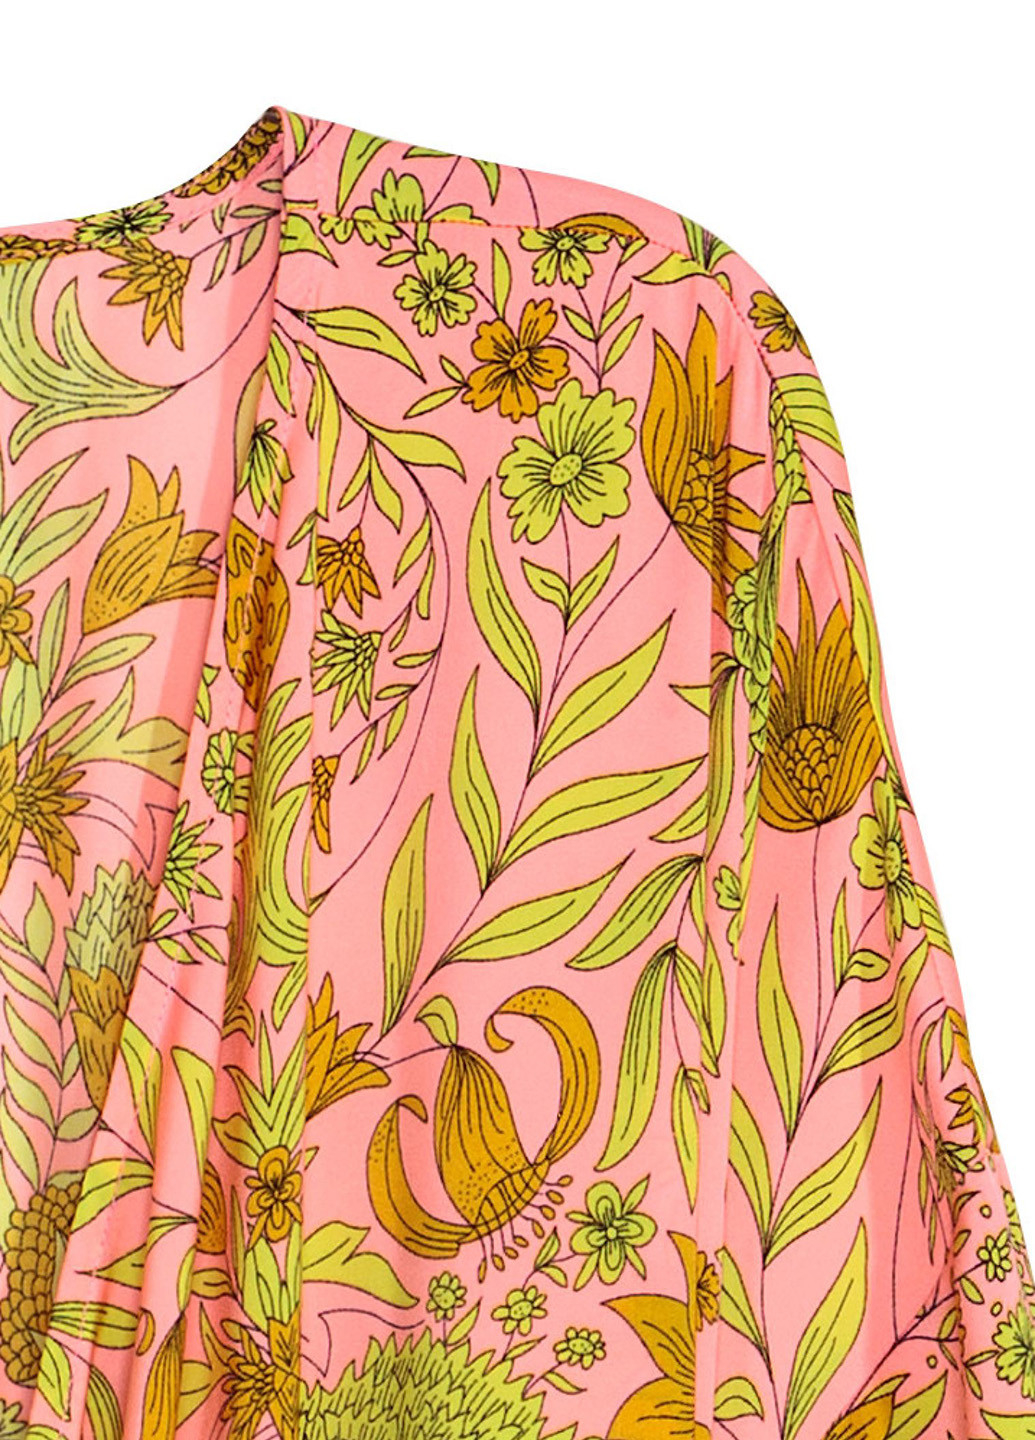 Накидка H&M цветочная розовая пляжная полиэстер